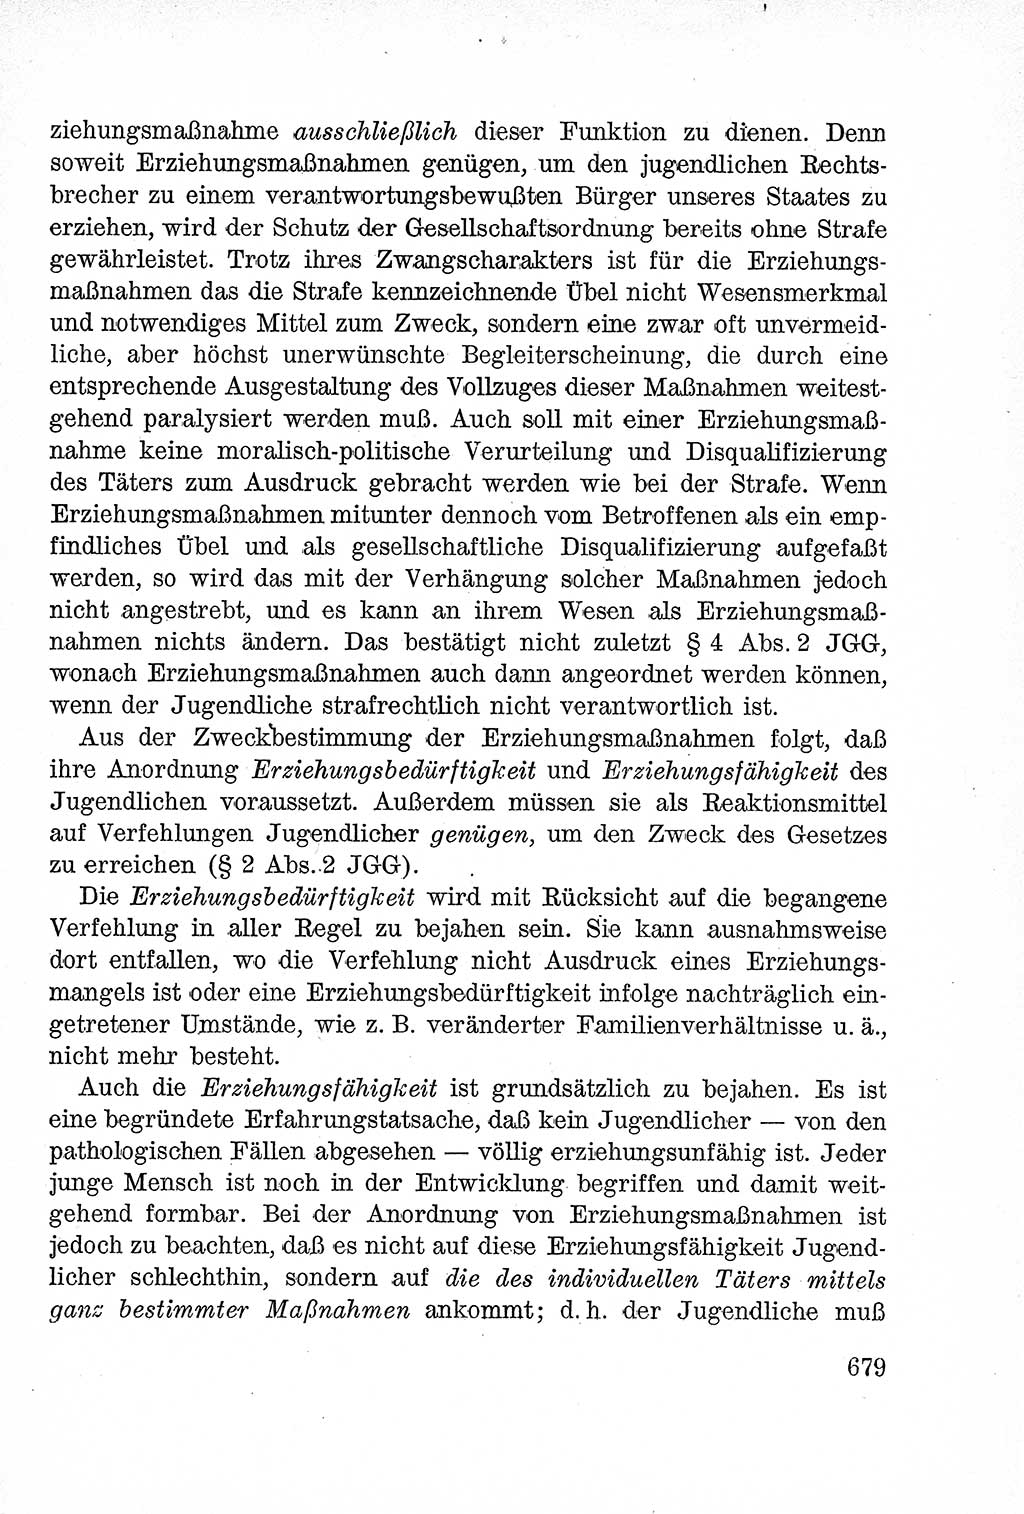 Lehrbuch des Strafrechts der Deutschen Demokratischen Republik (DDR), Allgemeiner Teil 1957, Seite 679 (Lb. Strafr. DDR AT 1957, S. 679)